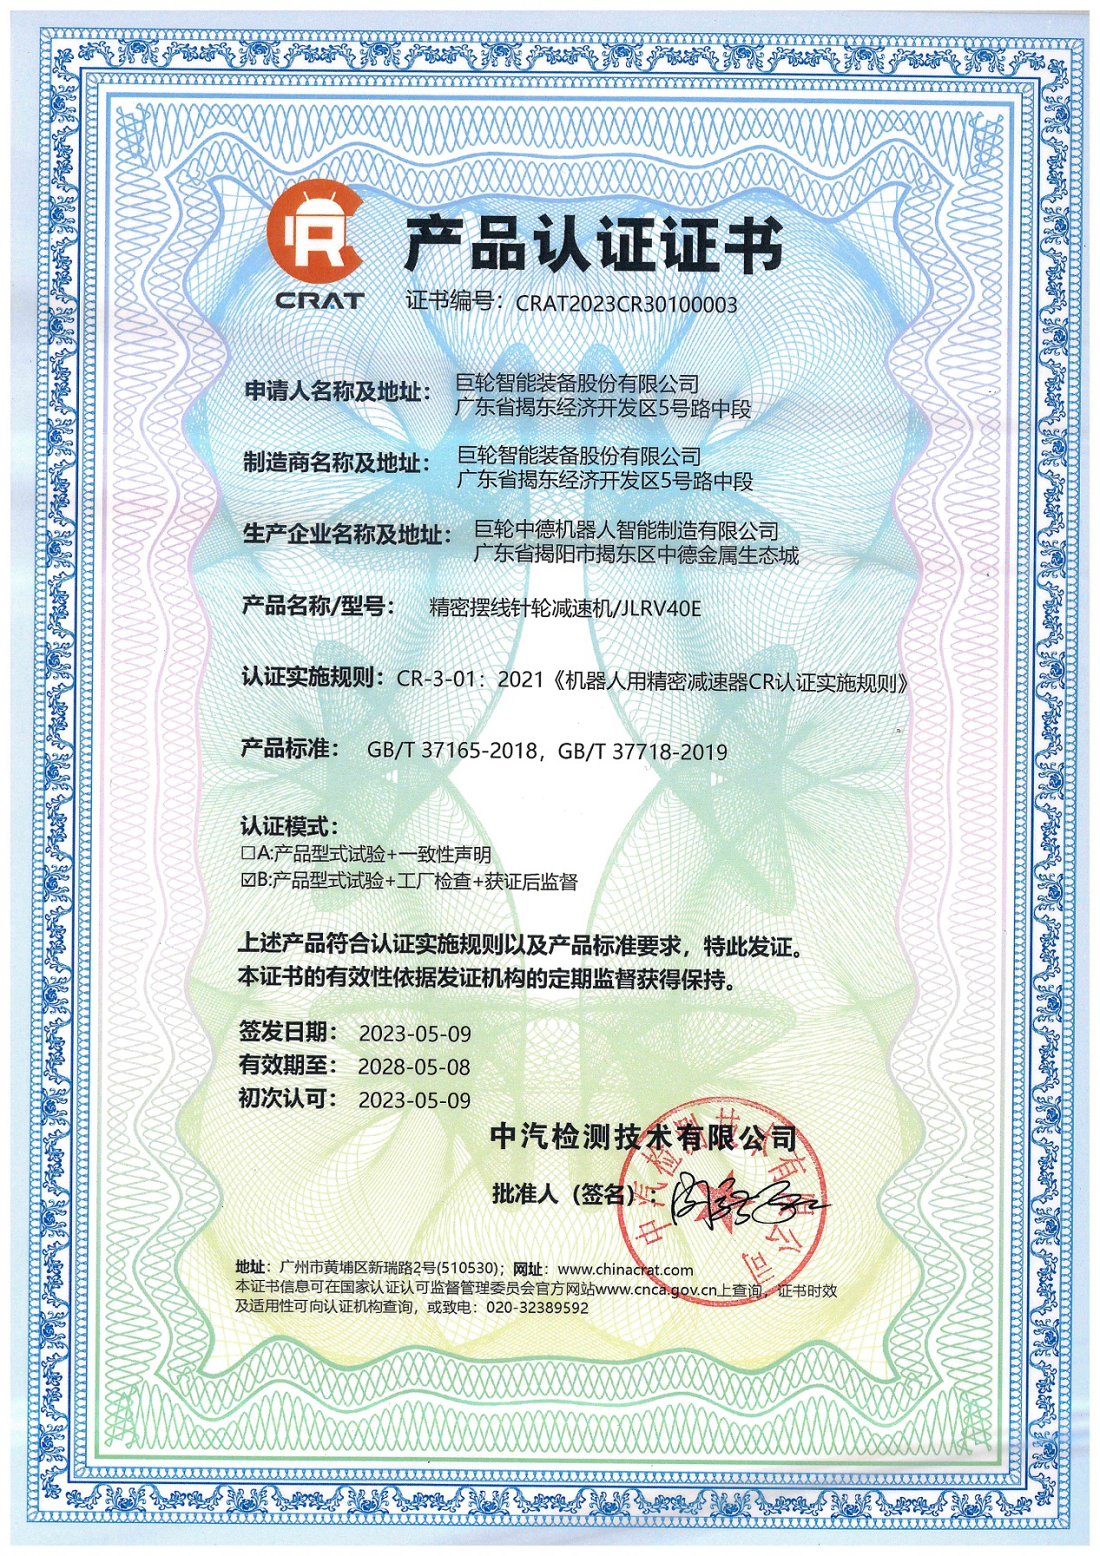 十年磨一剑，砥砺成大器 —— 安博·体育（中国）有限公司官网RV减速器首家国产通过CR产品认证